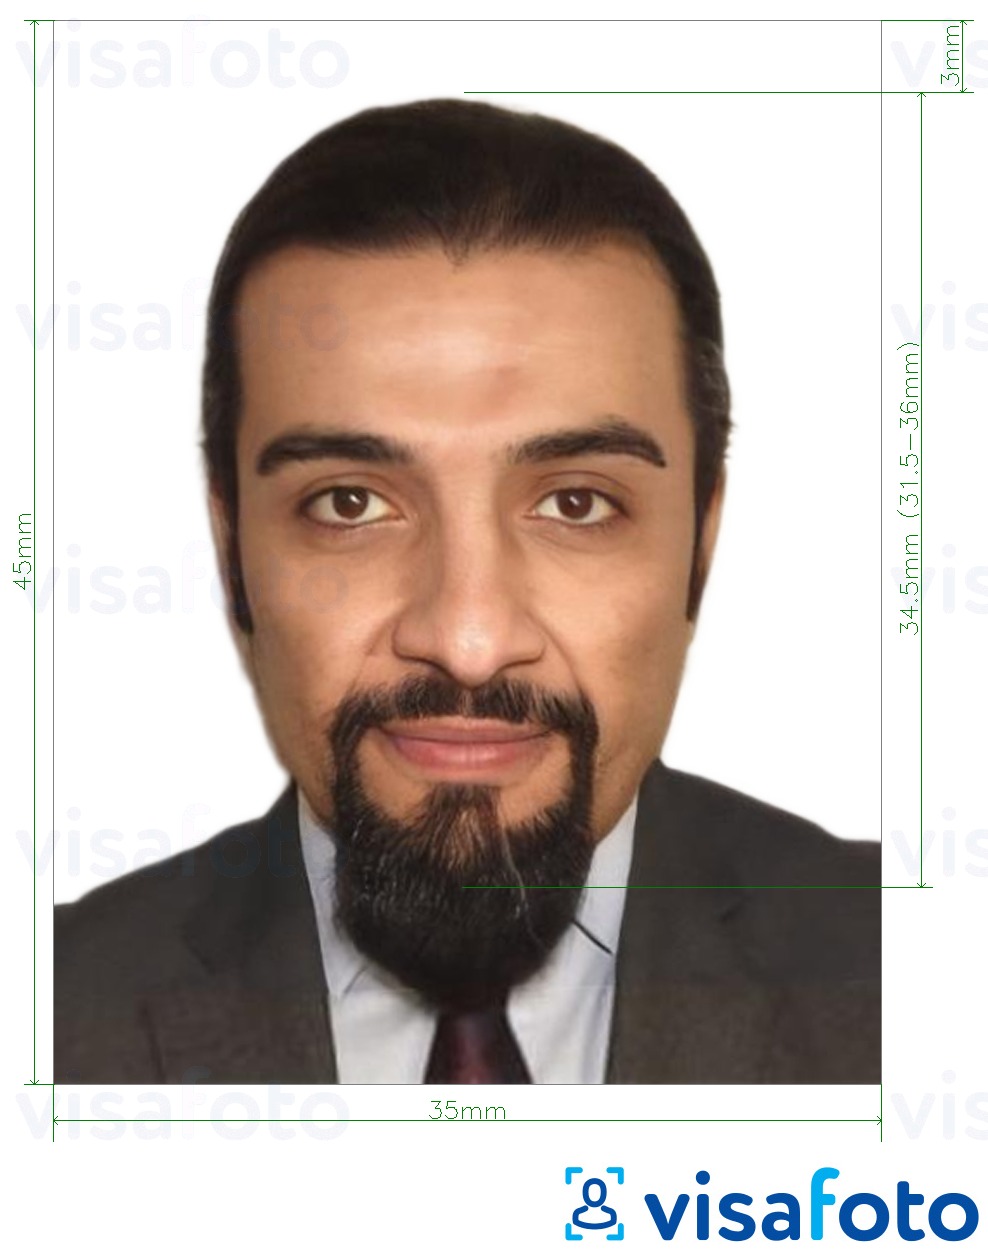 Ejemplo de foto para Pasaporte de Irak 35x45 mm (3.5x4.5 cm) con la especificación del tamaño exacto